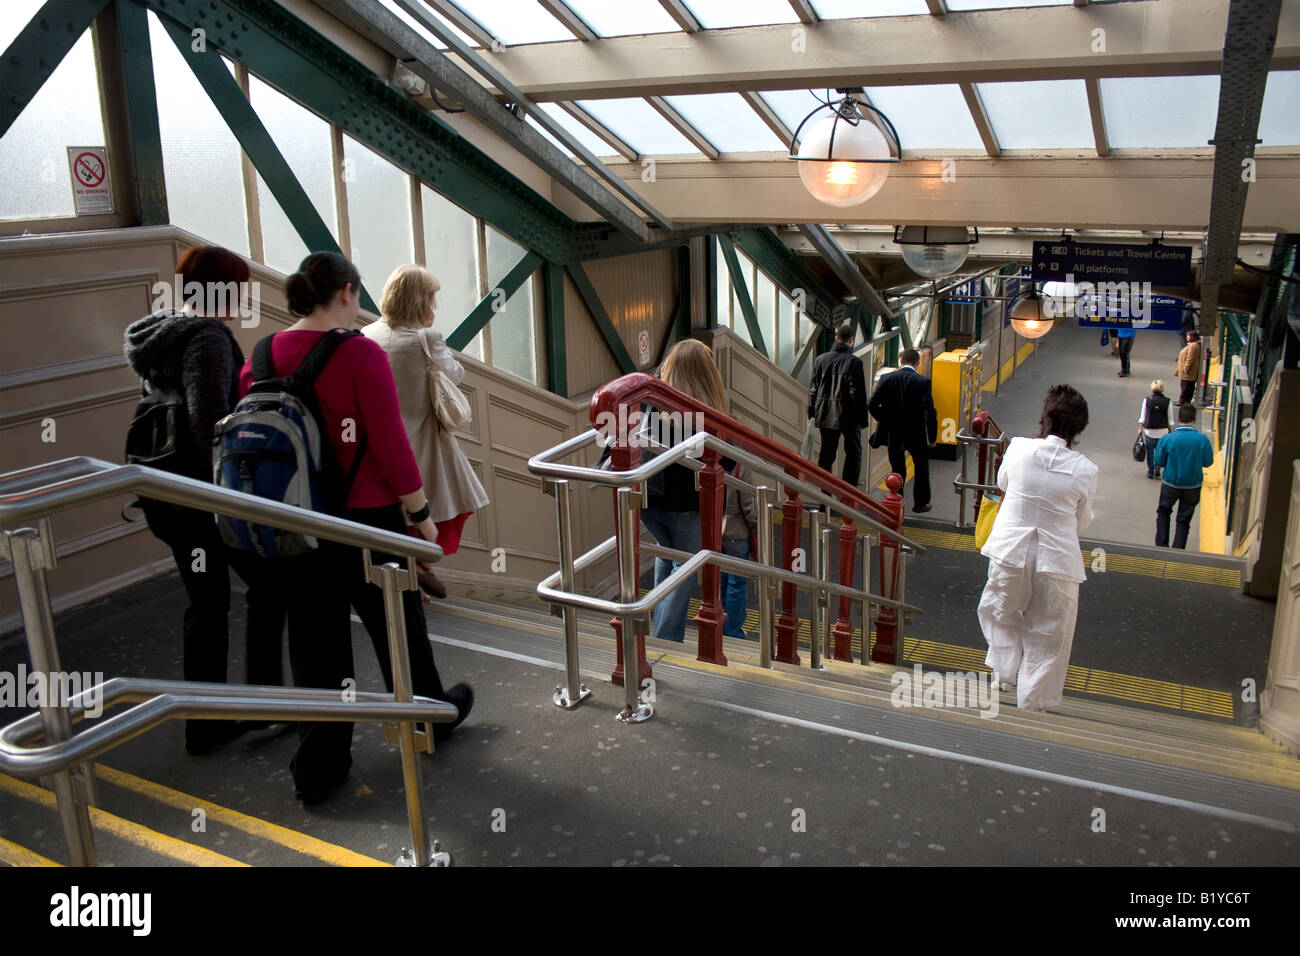 La gare de Waverley dans le centre-ville d'Édimbourg, Écosse, Royaume-Uni - des mesures pour la plate-forme avec les voyageurs pressés de prendre le train Banque D'Images